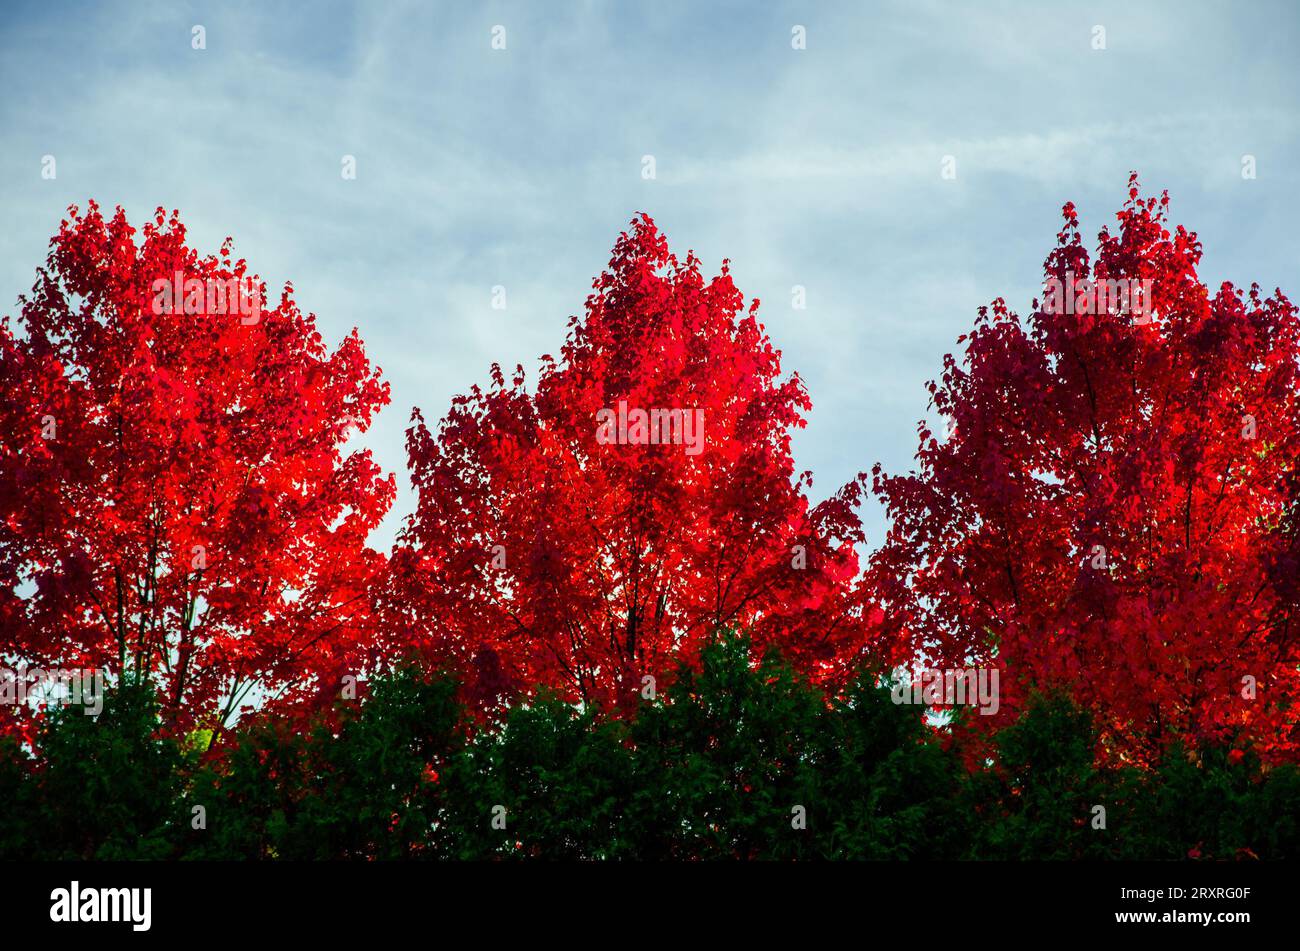 Un ensemble de trois arbres à l'automne avec les feuilles changeant de couleur en rouge sur une journée partiellement nuageuse mais ensoleillée à Kensington Metropark à Milford, une banlieue Banque D'Images